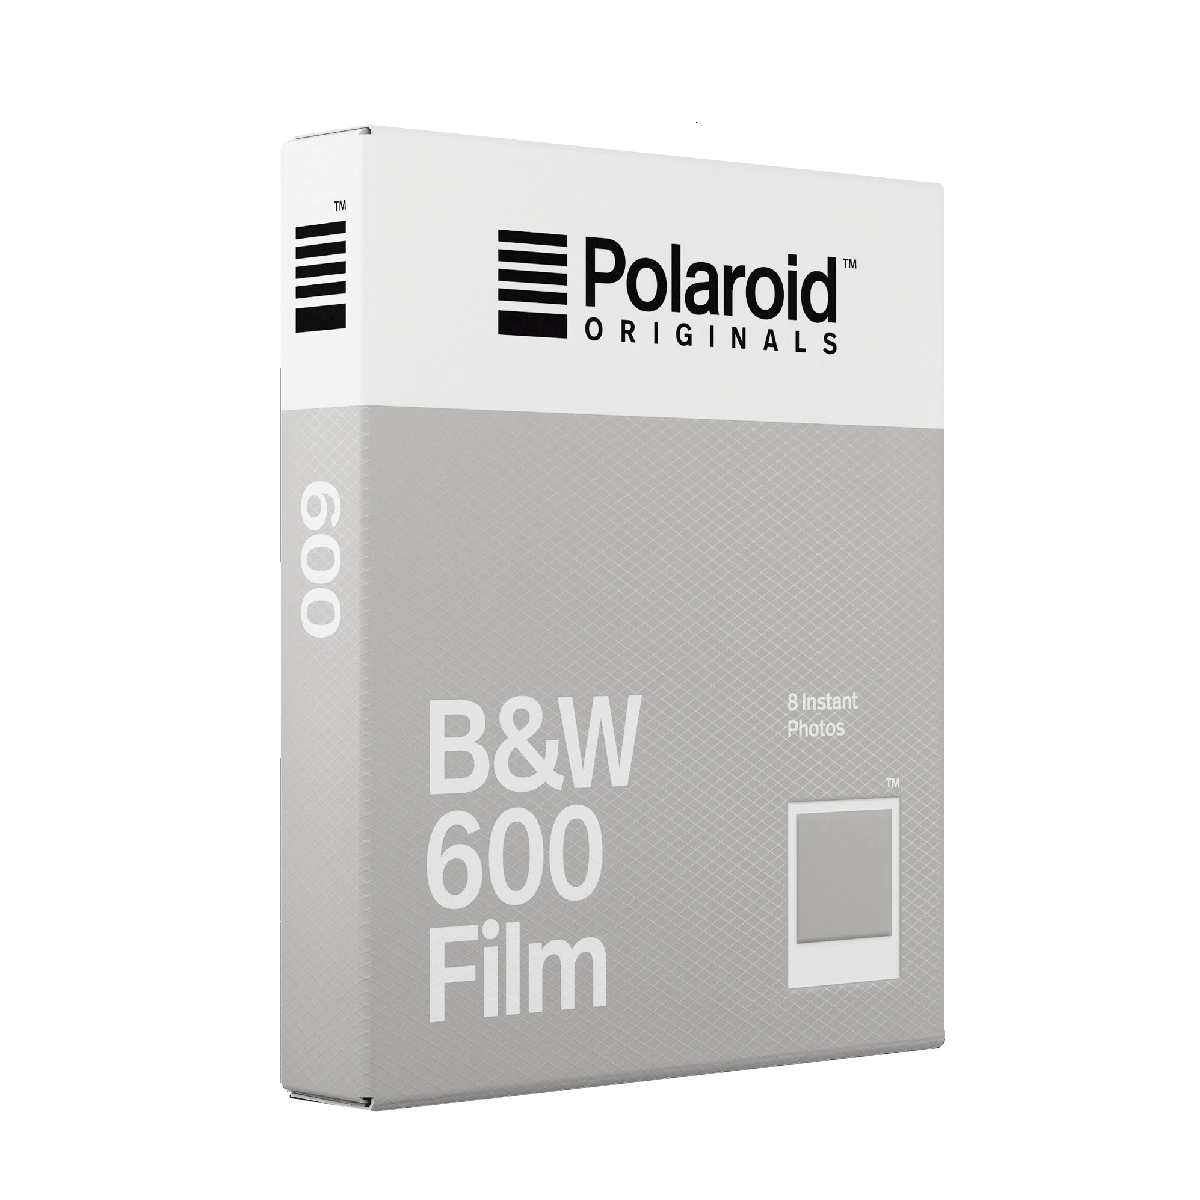 Película instantánea Polaroid 600 Blanco y Negro, 8 hojas